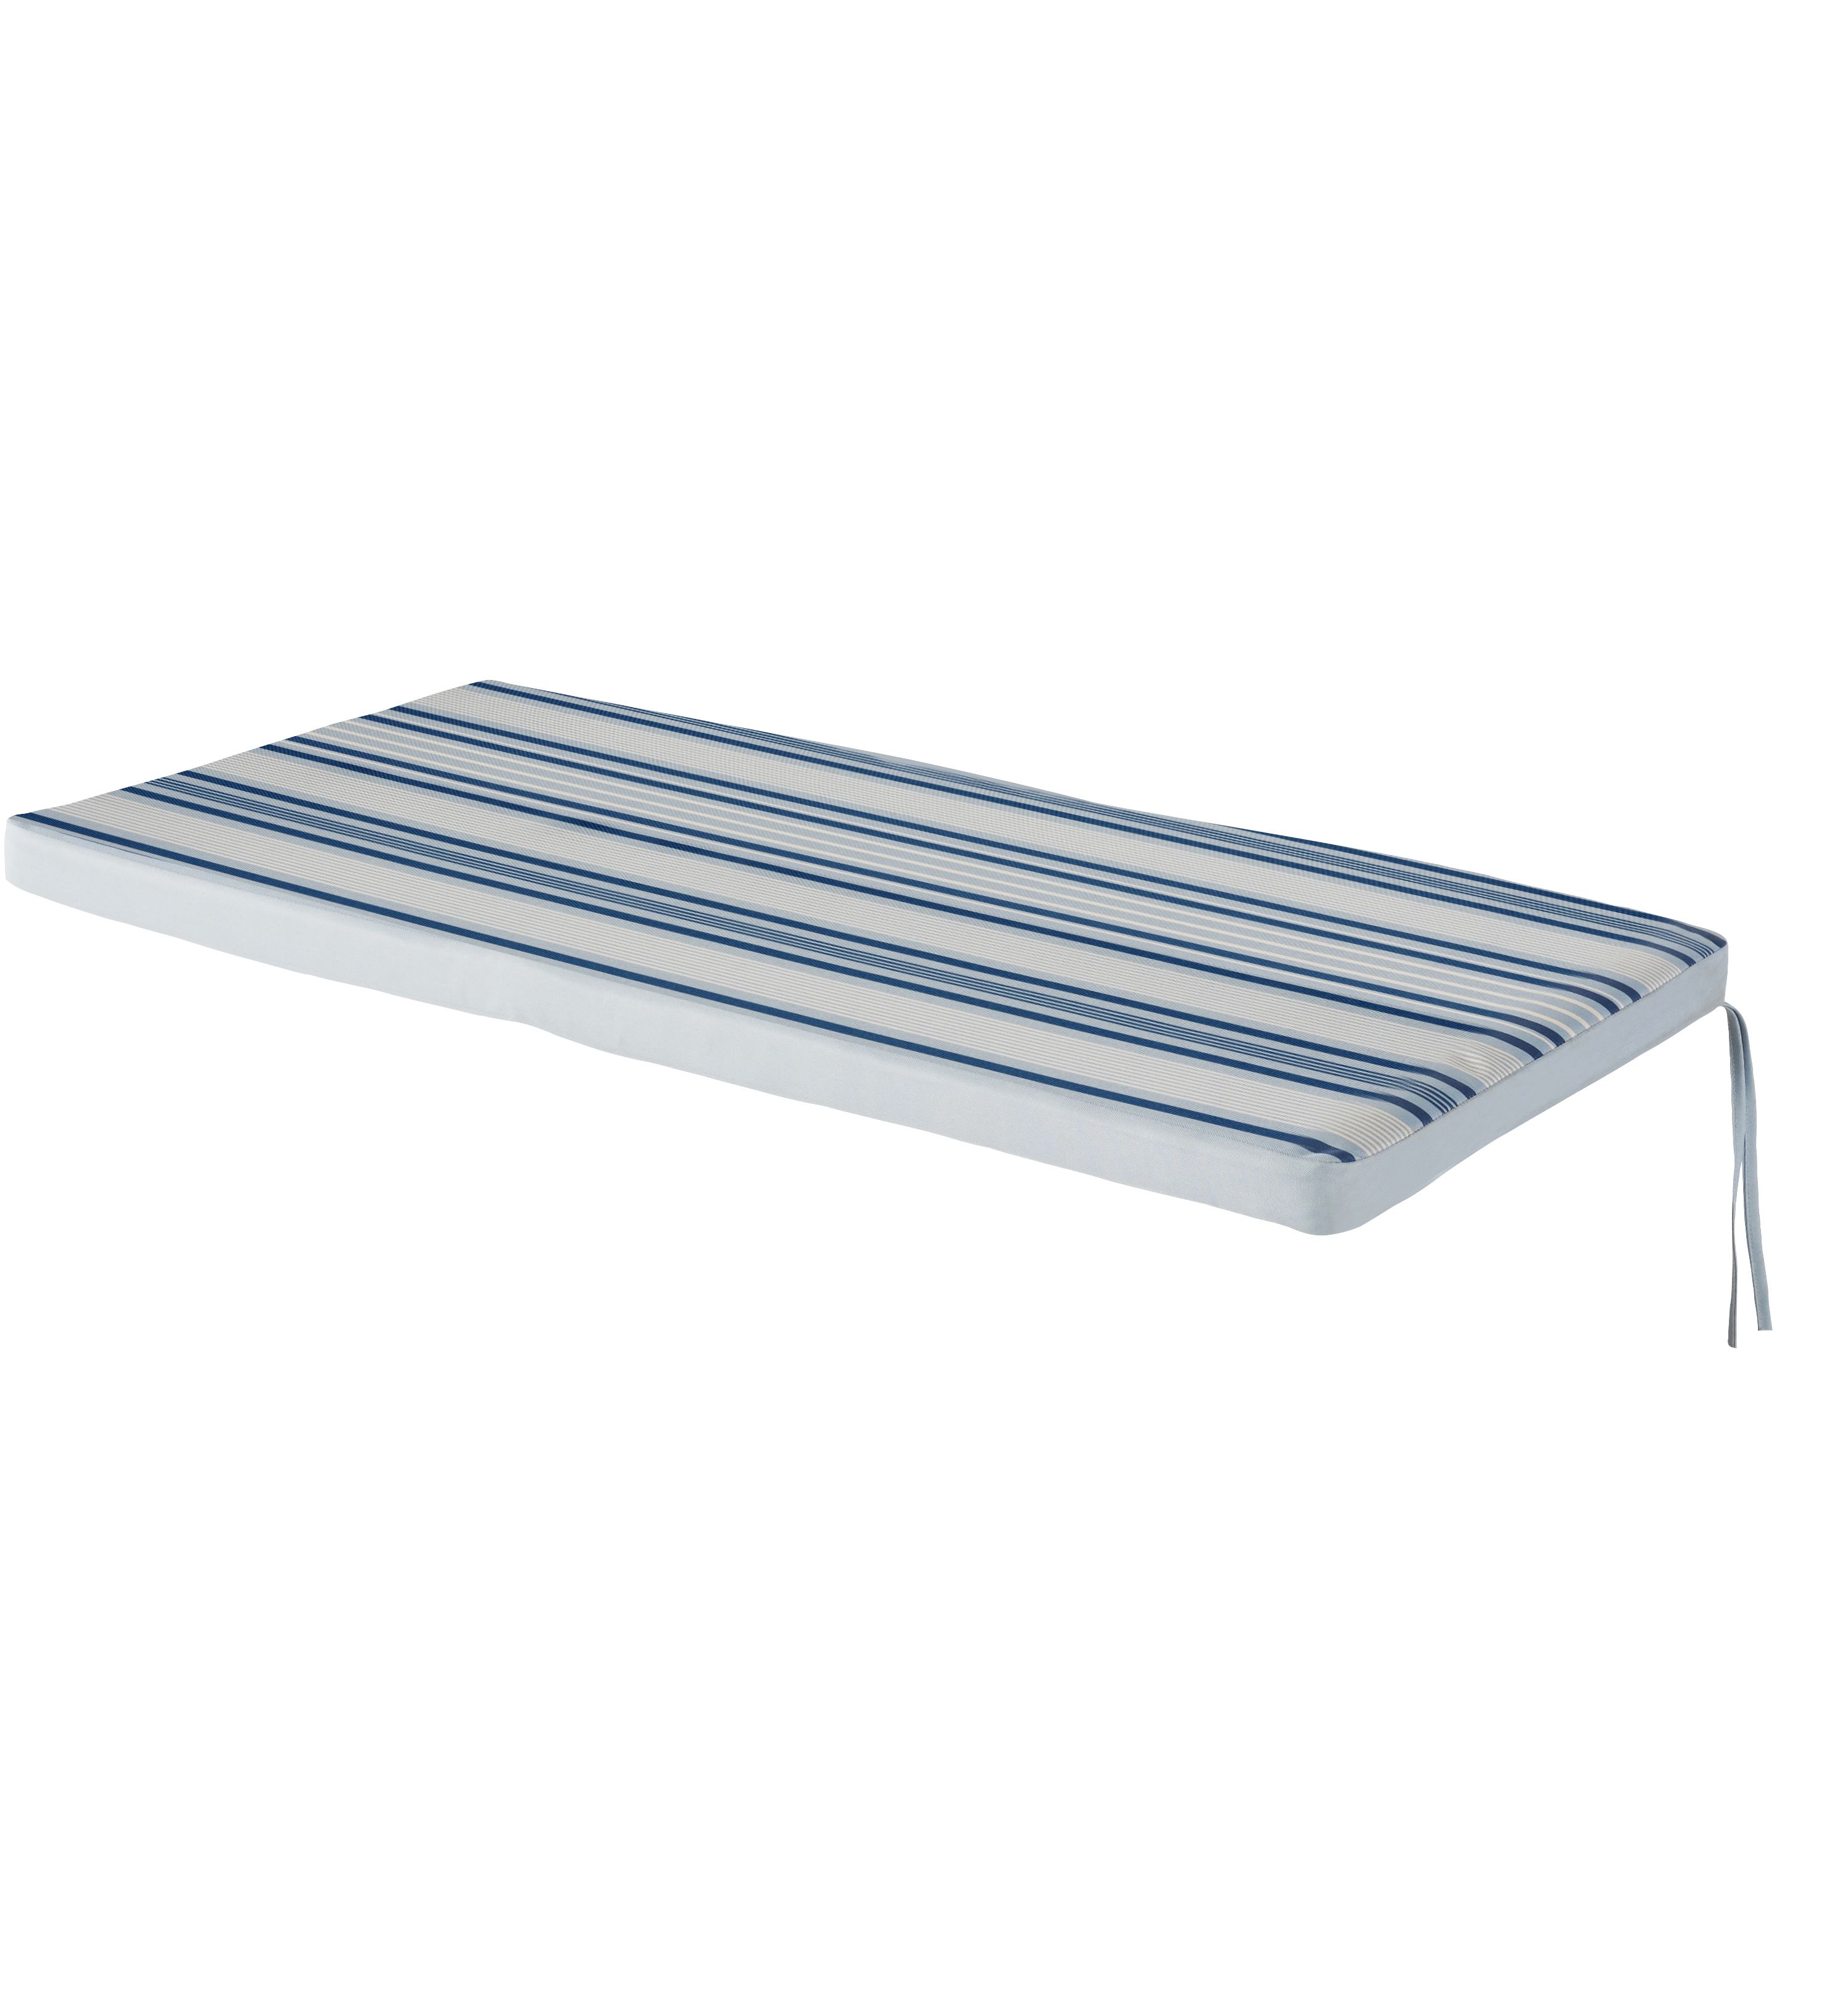 Isla Striped Blue Stripe Bench Cushion L 103 5cm X W 48cm Diy At B Q